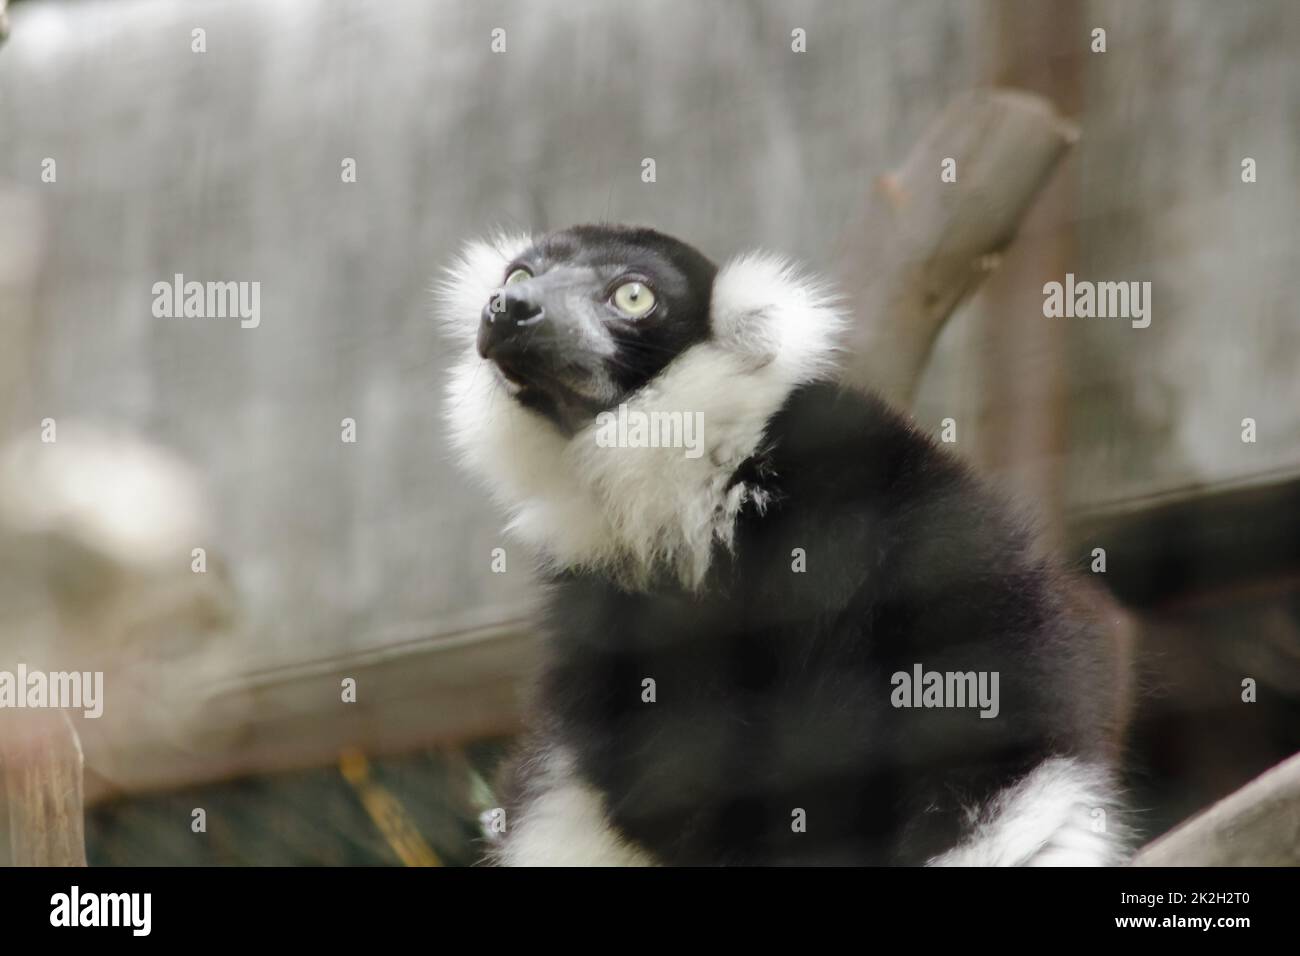 Ruffed Lemur ist ein Säugetier. Ist ein buntes Tier, das einen schwarzen Körper abwechselnd mit weißem hat Stockfoto